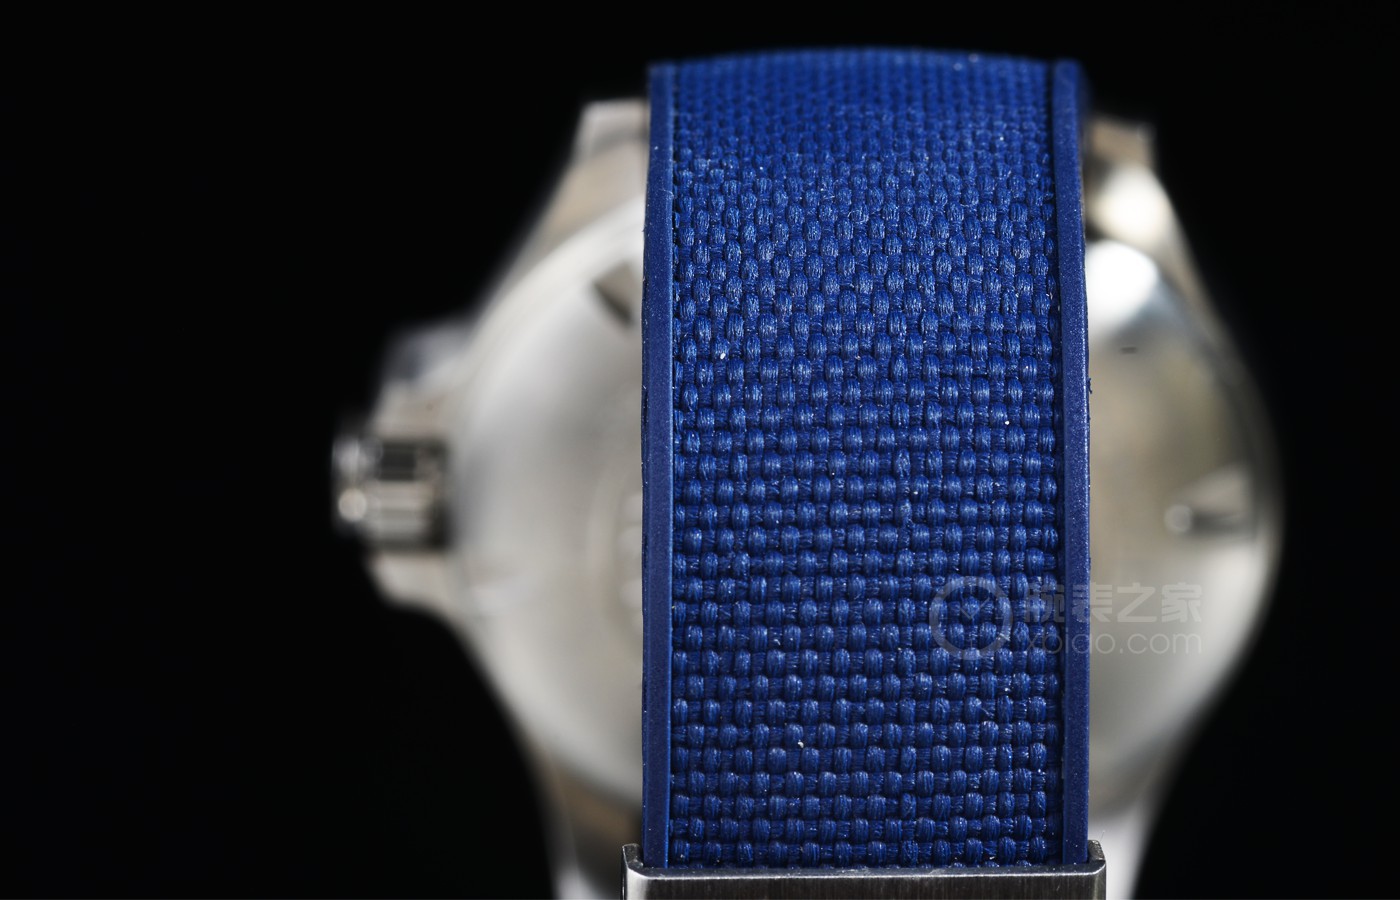 精准、抗造、双时区  品鉴浪琴康卡斯系列V.H.P. GMT光感设置腕表